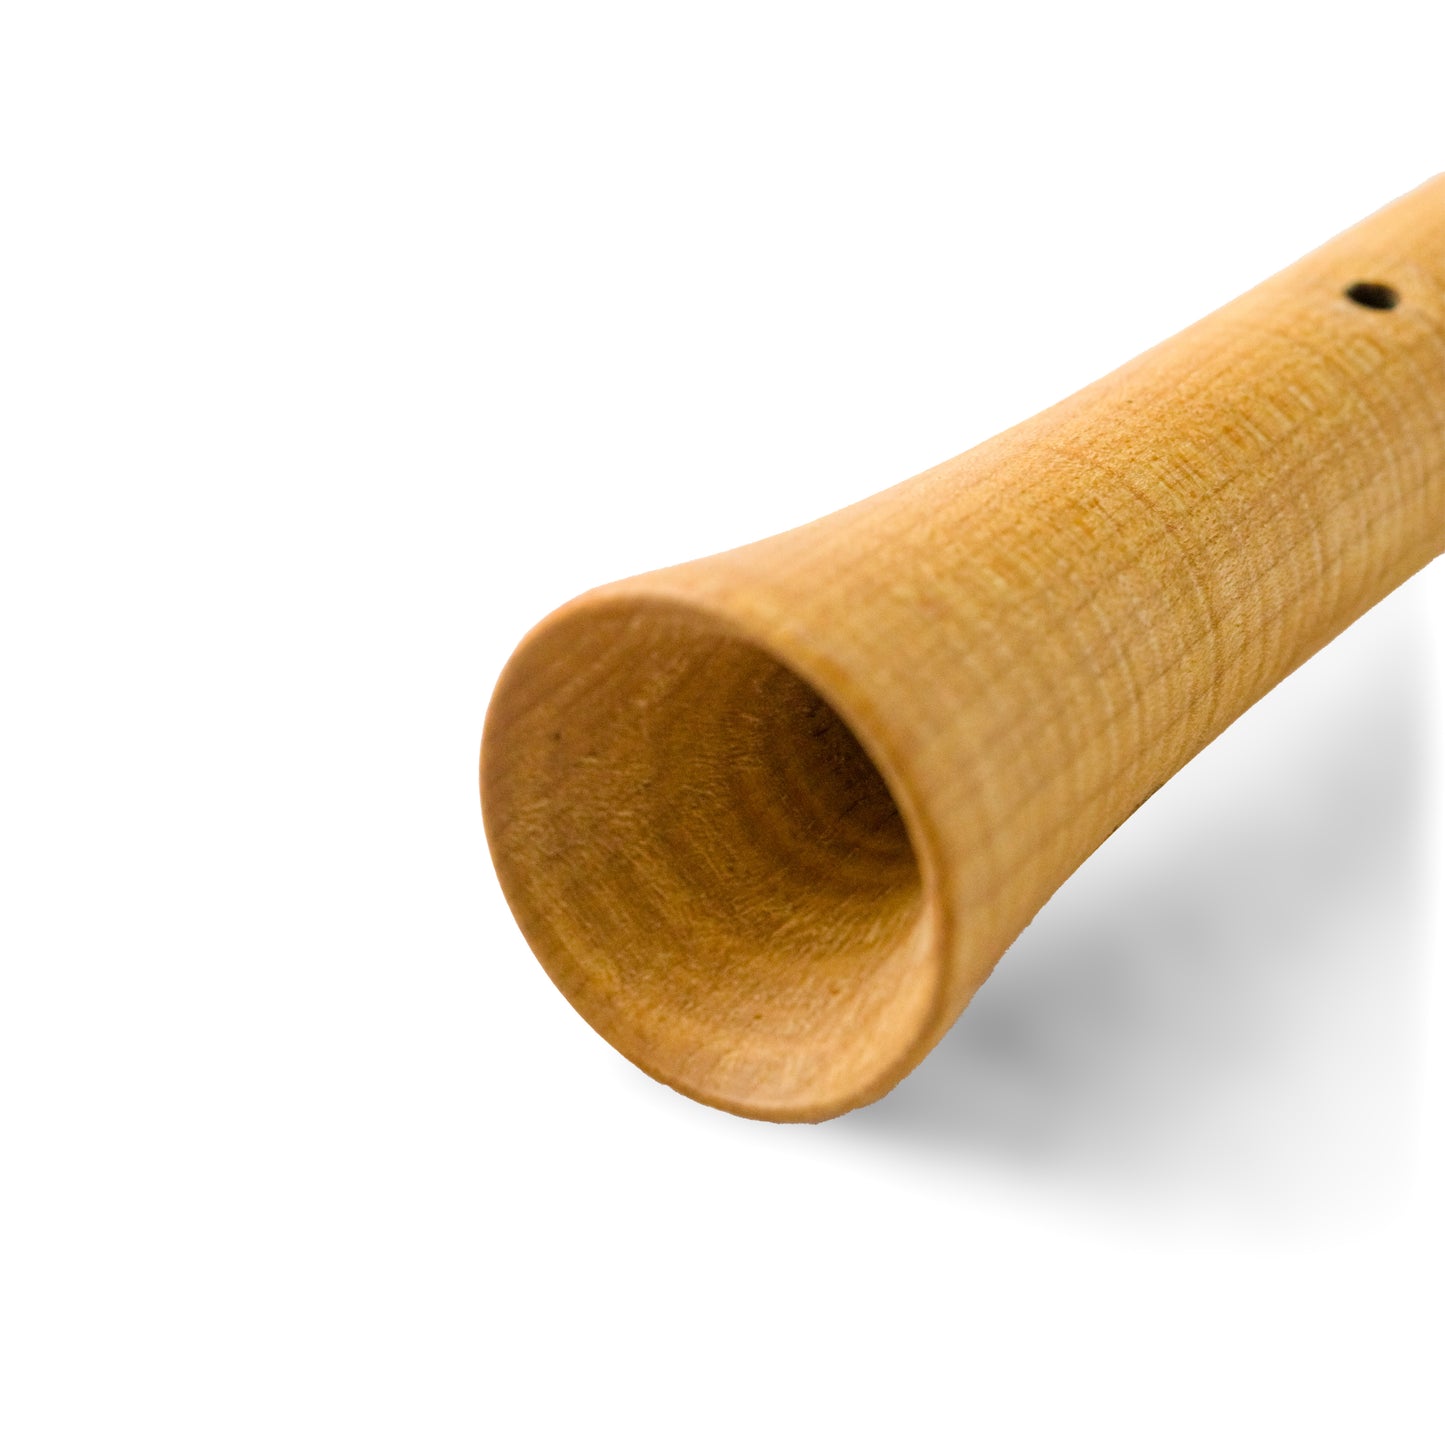 Wooden-Sax in legno d'acero